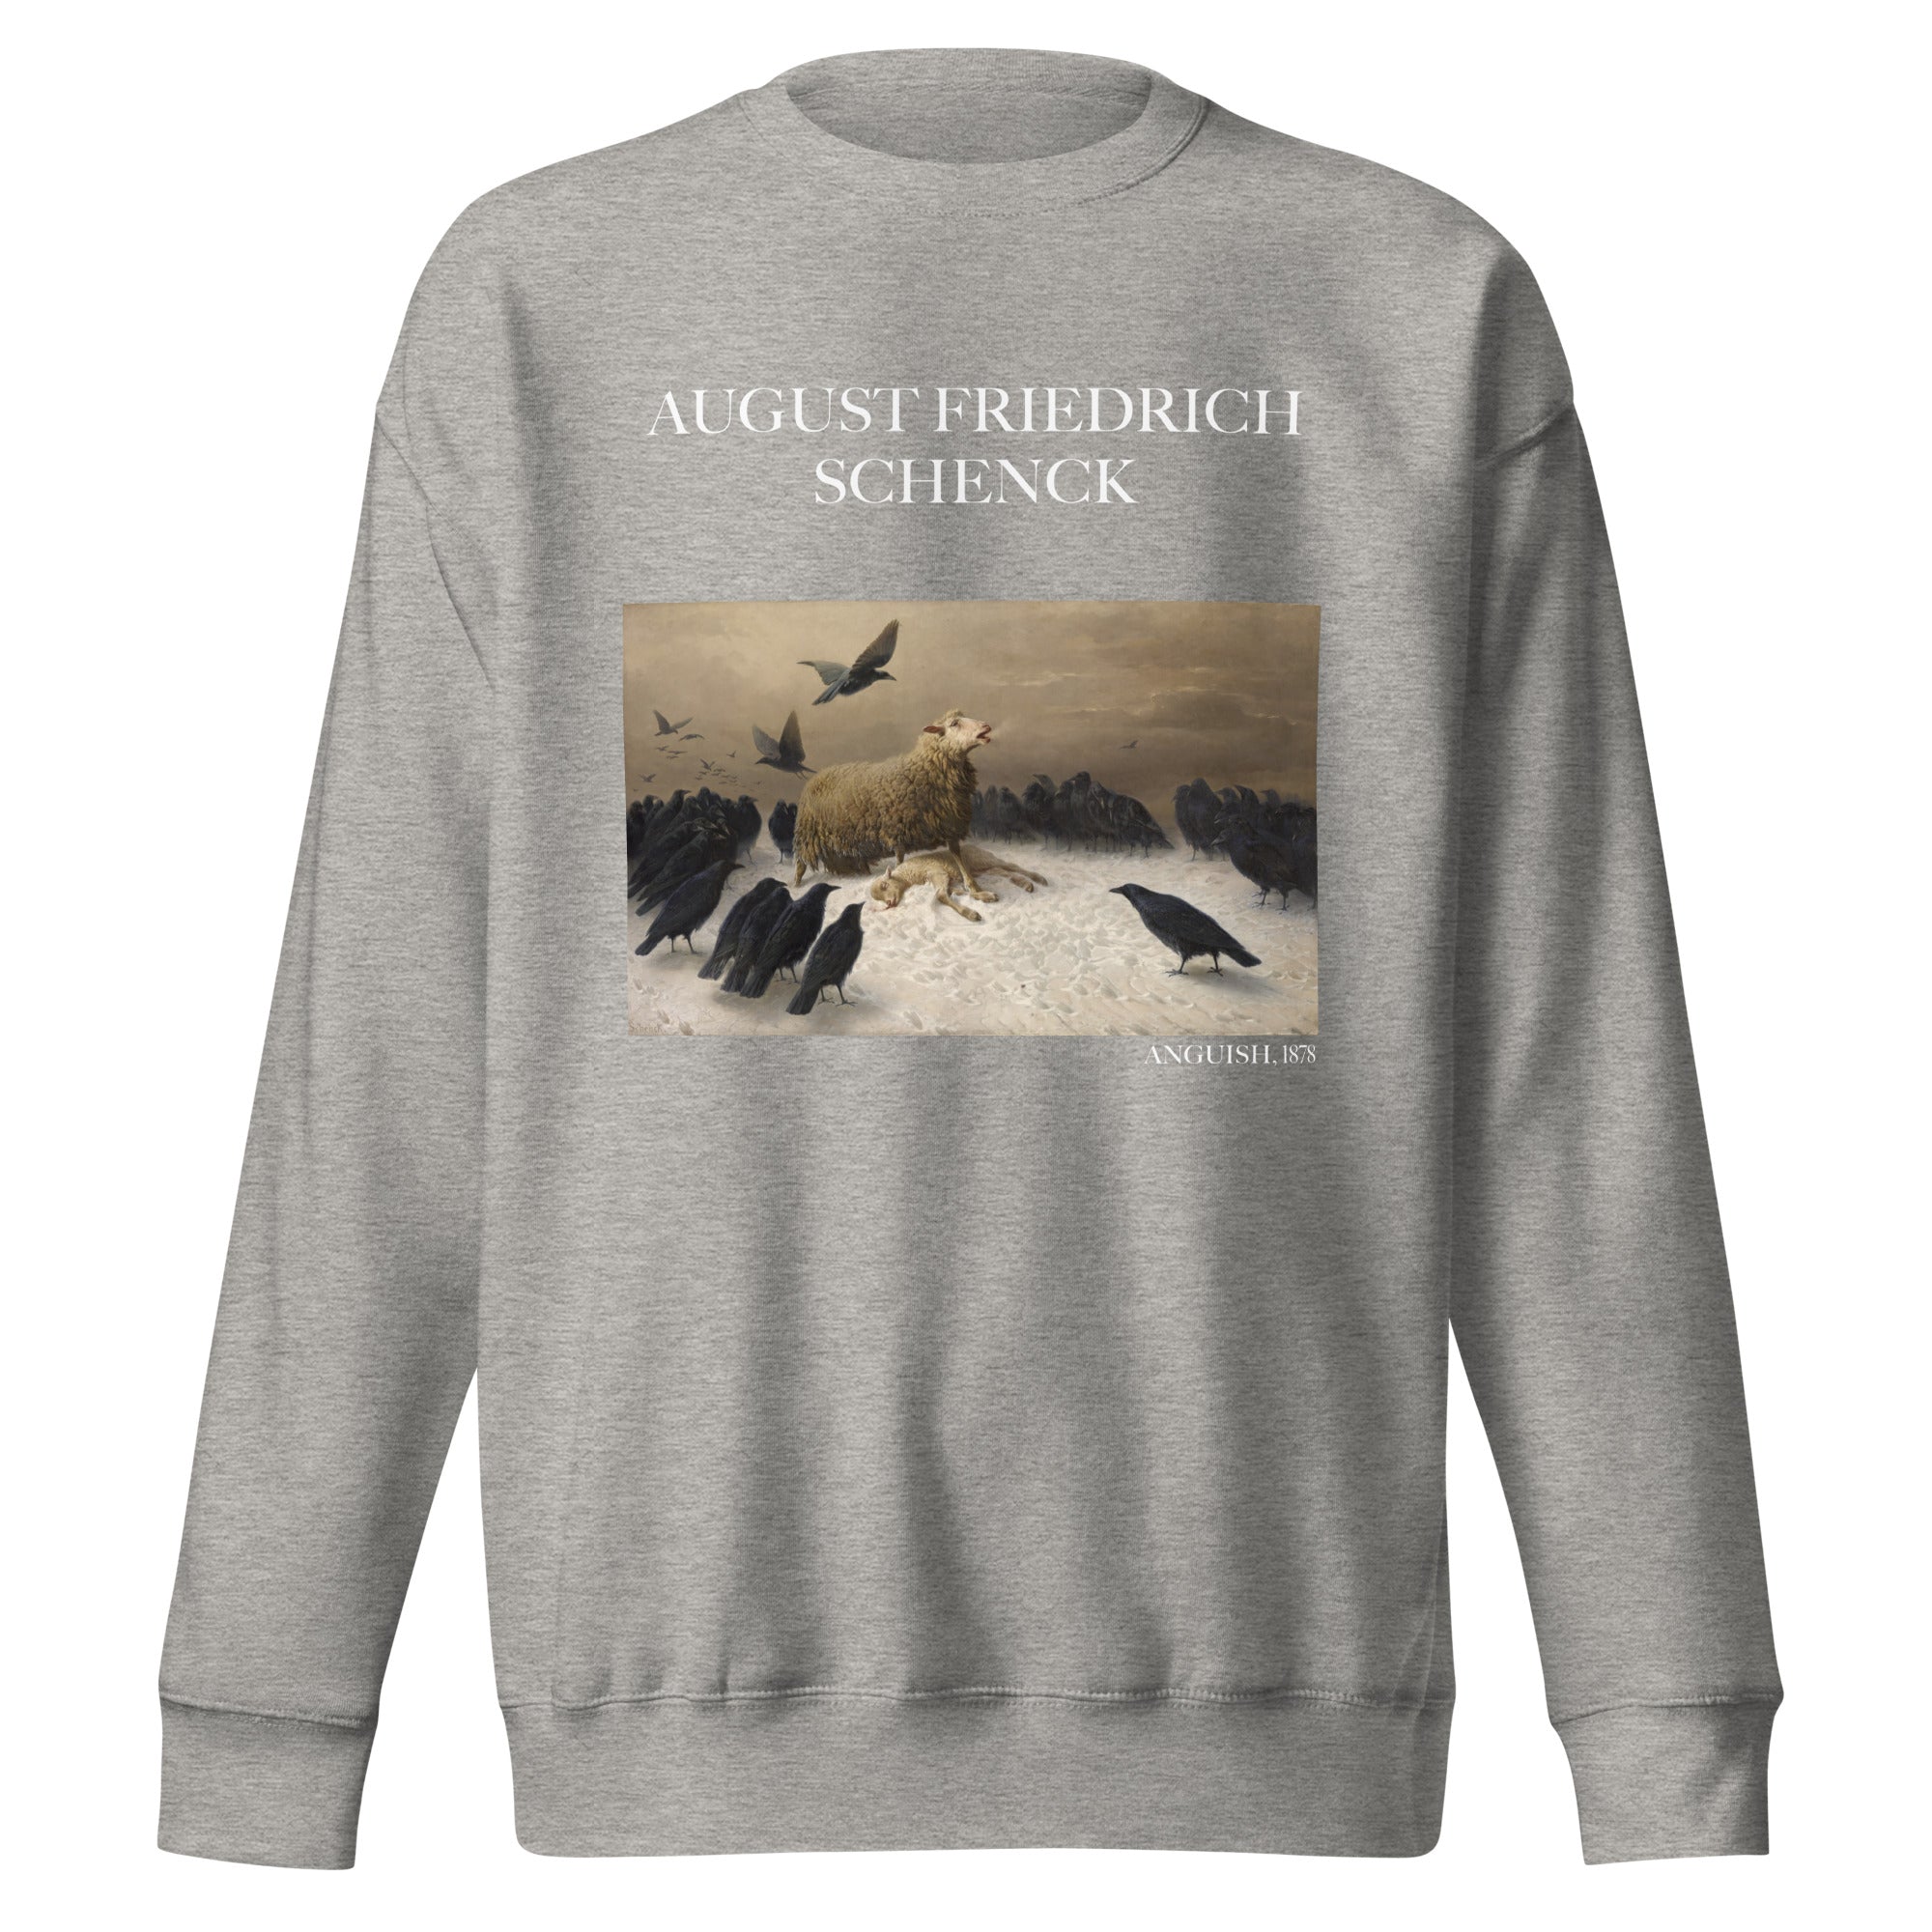 August Friedrich Schenck 'Anguish' Famous Painting Sweatshirt | Unisex Premium Sweatshirt